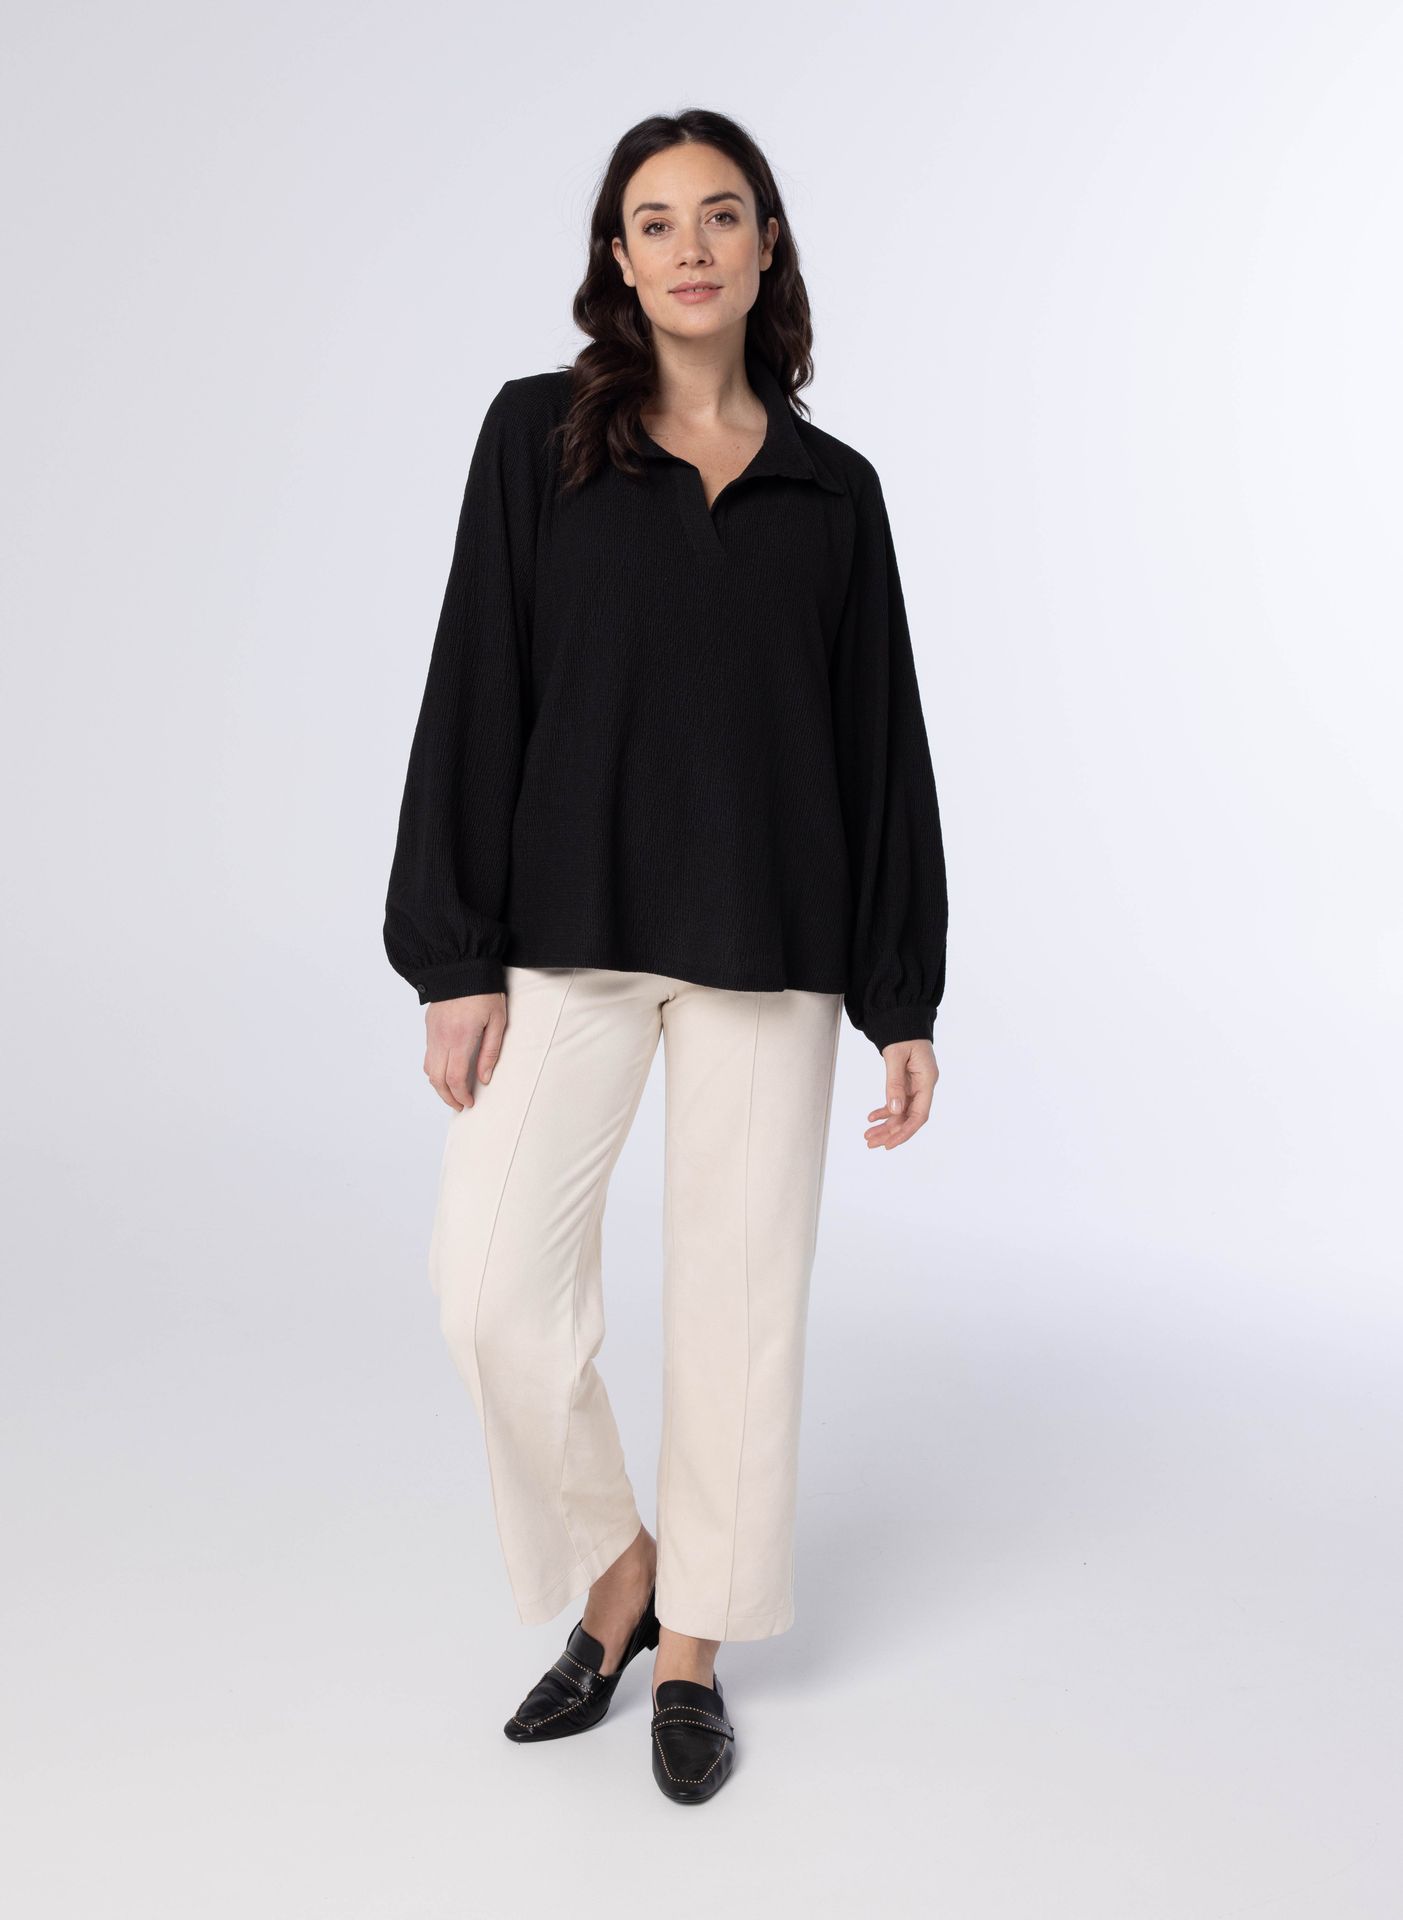 Norah Zwarte blouse met pofmouwen black 214092-001